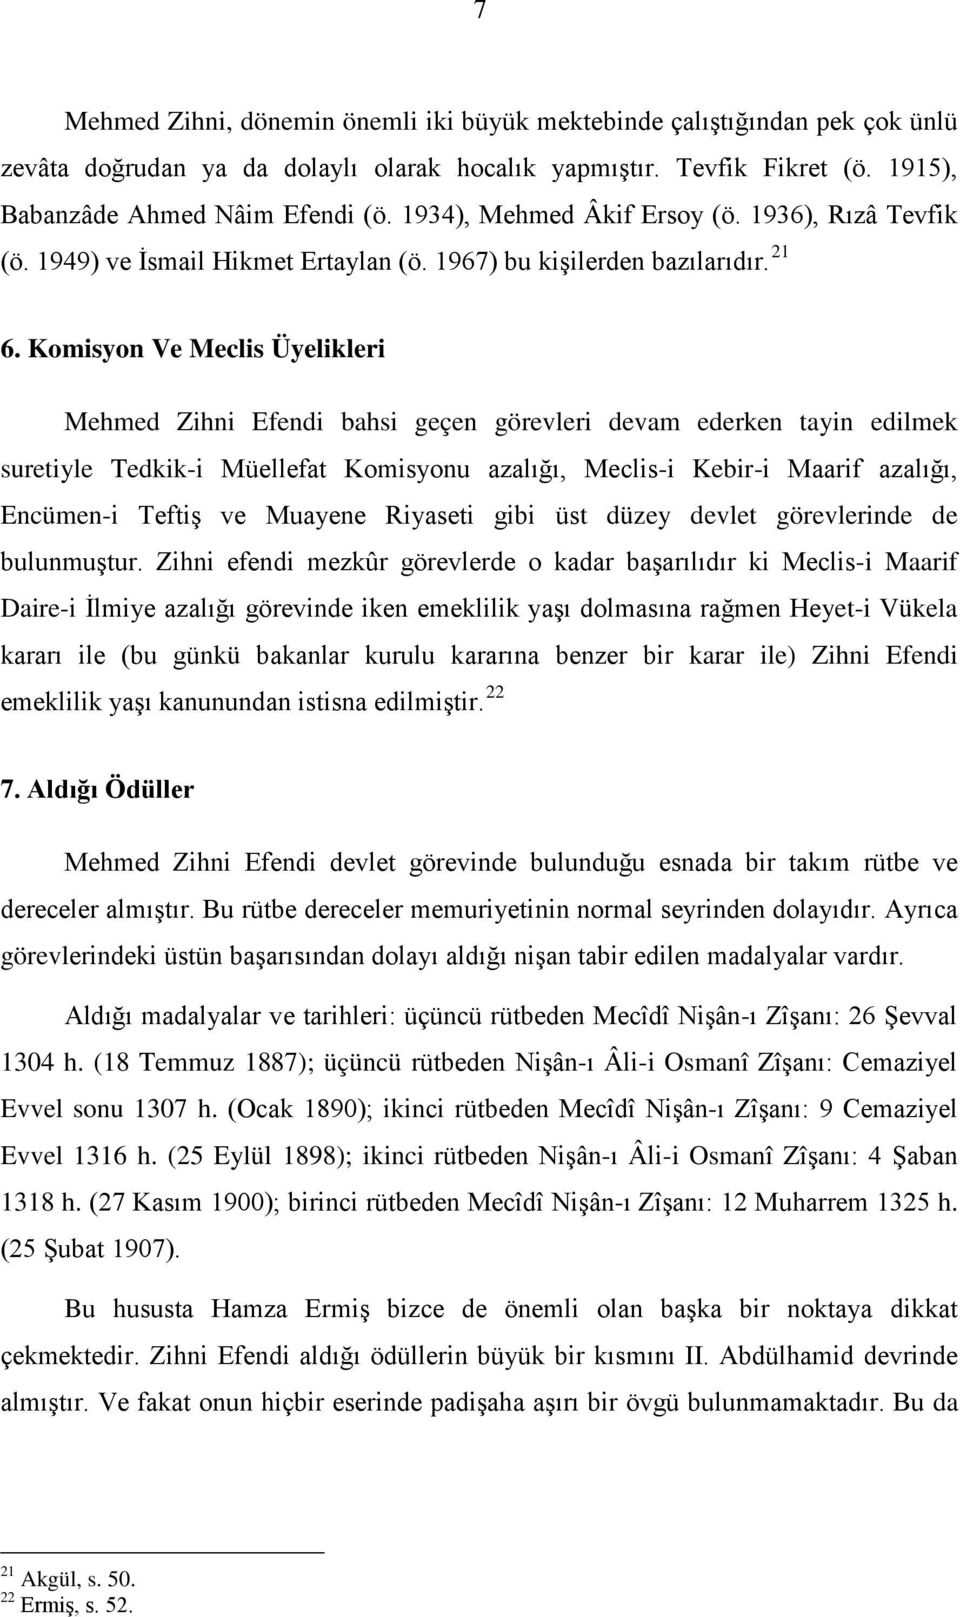 Komisyon Ve Meclis Üyelikleri Mehmed Zihni Efendi bahsi geçen görevleri devam ederken tayin edilmek suretiyle Tedkik-i Müellefat Komisyonu azalığı, Meclis-i Kebir-i Maarif azalığı, Encümen-i Teftiş